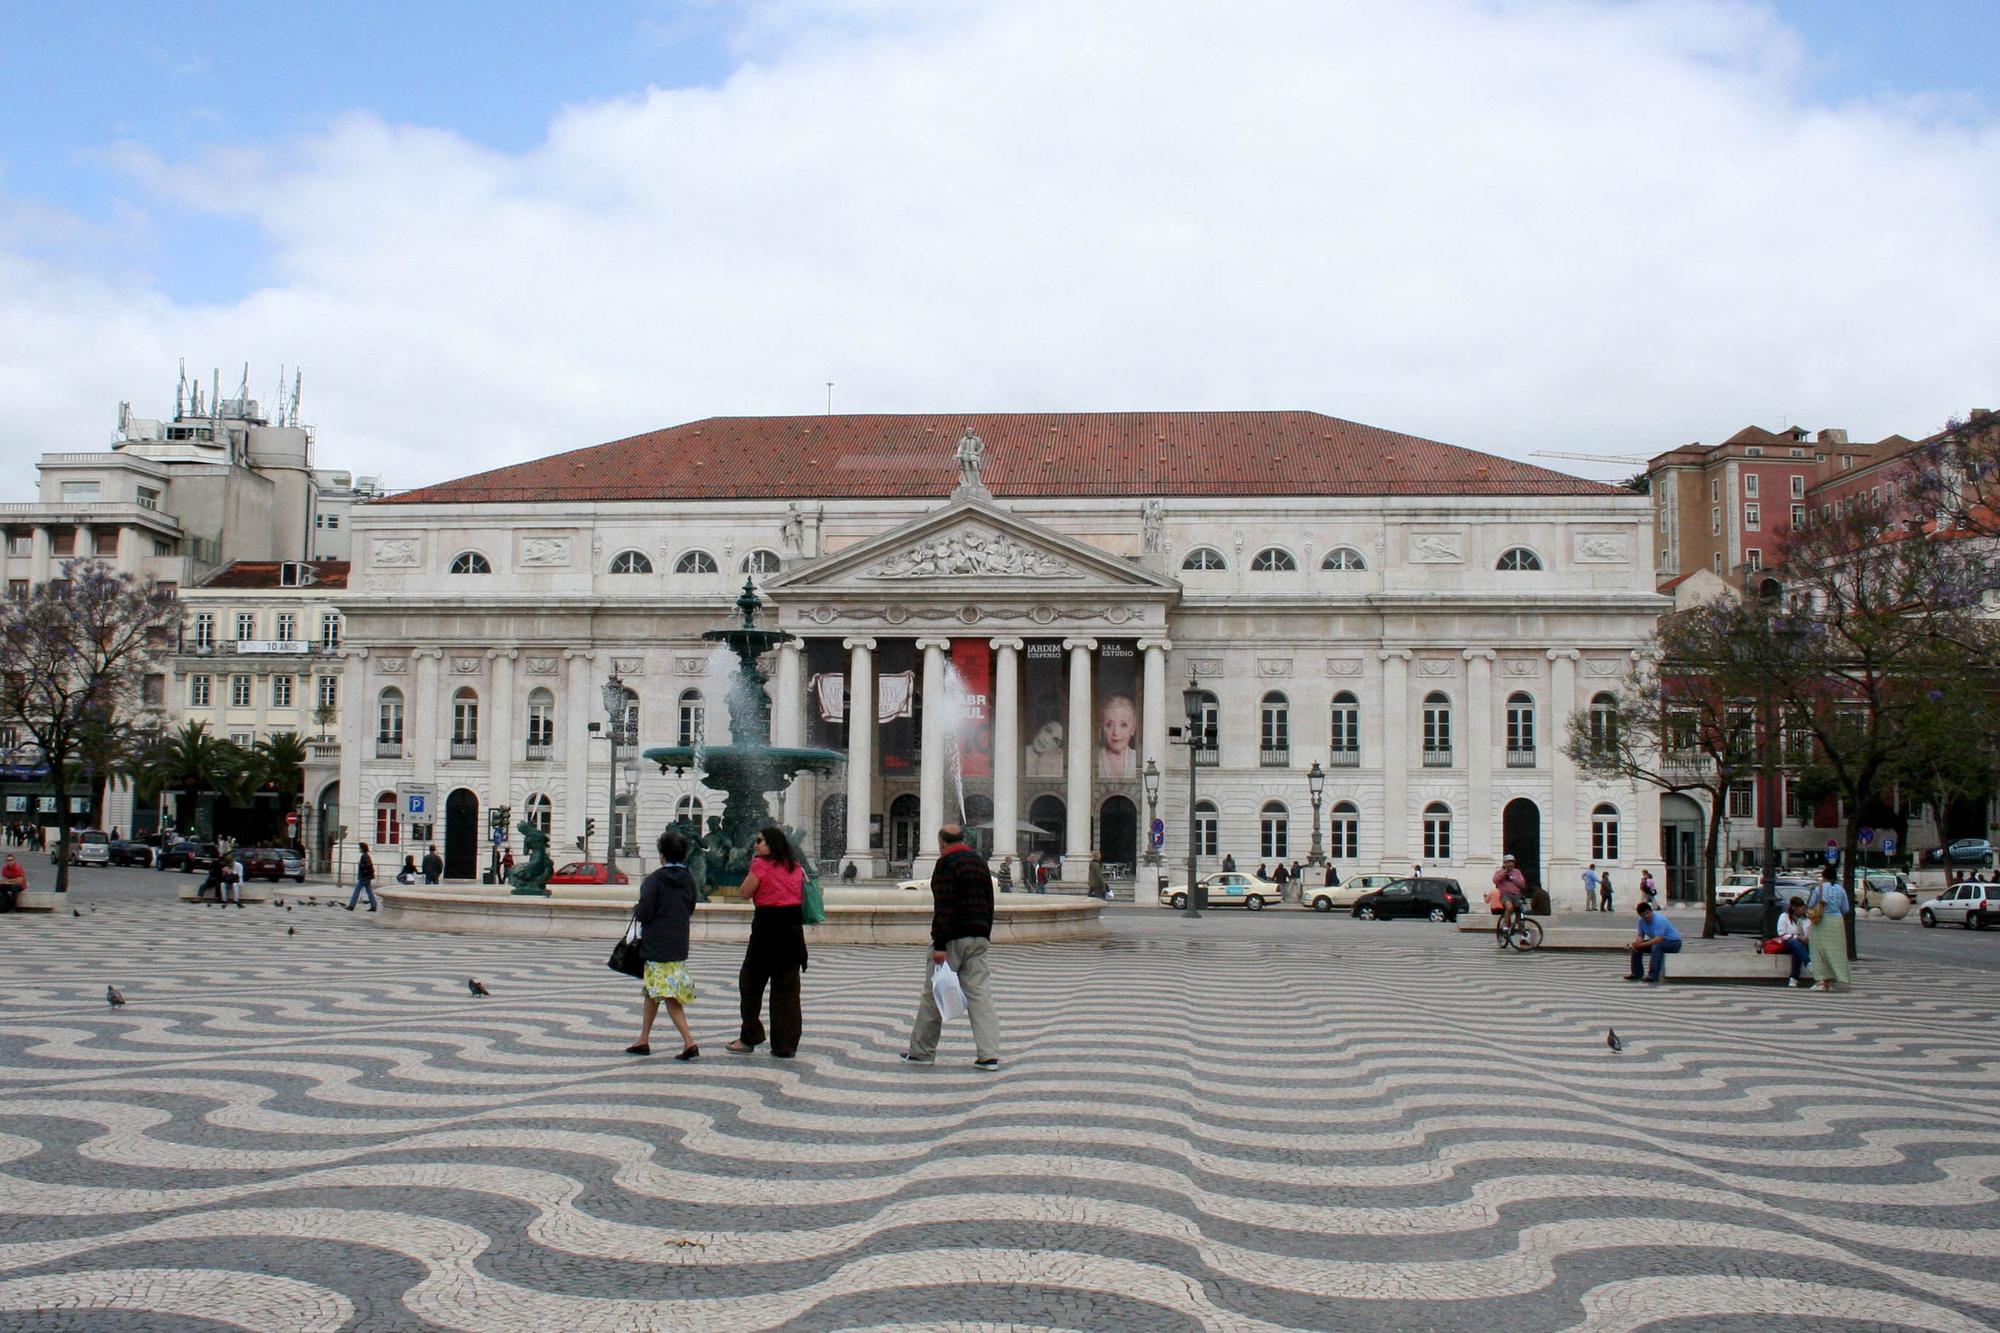 Teatro Nacional de D Maria II à Lisbonne. [CC-BY-SA 3.0 - Alegna13]